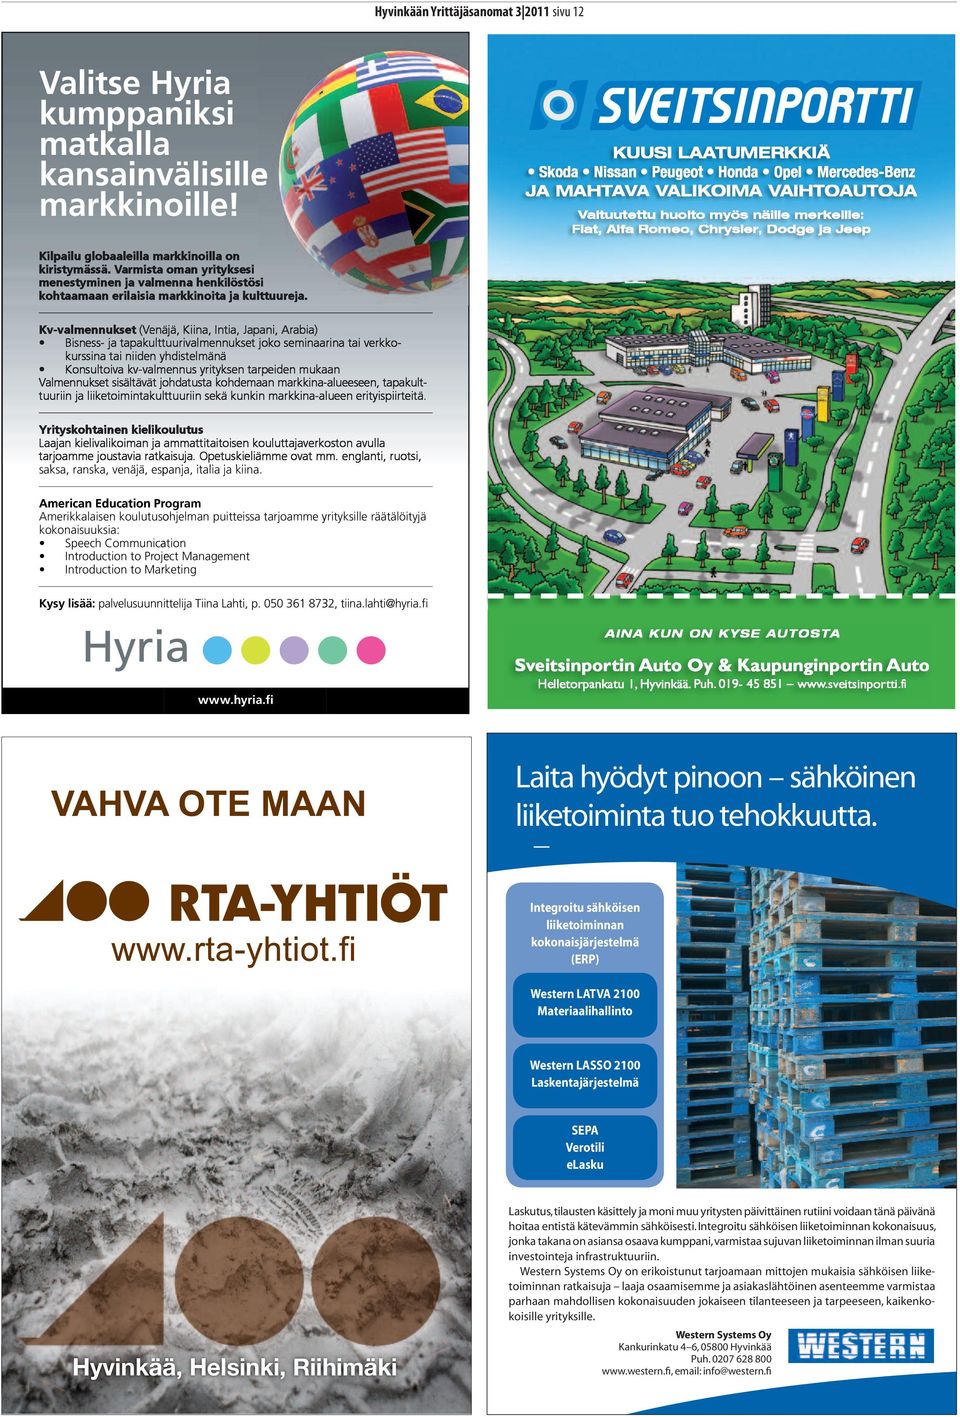 Education Program Kysy lisää: AINA KUN ON KYSE AUTOSTA www.hyria.fi Sveitsinportin Auto Oy & Kaupunginportin Auto Helletorpankatu 1, Hyvinkää. Puh. 019-45 851 www.sveitsinportti.